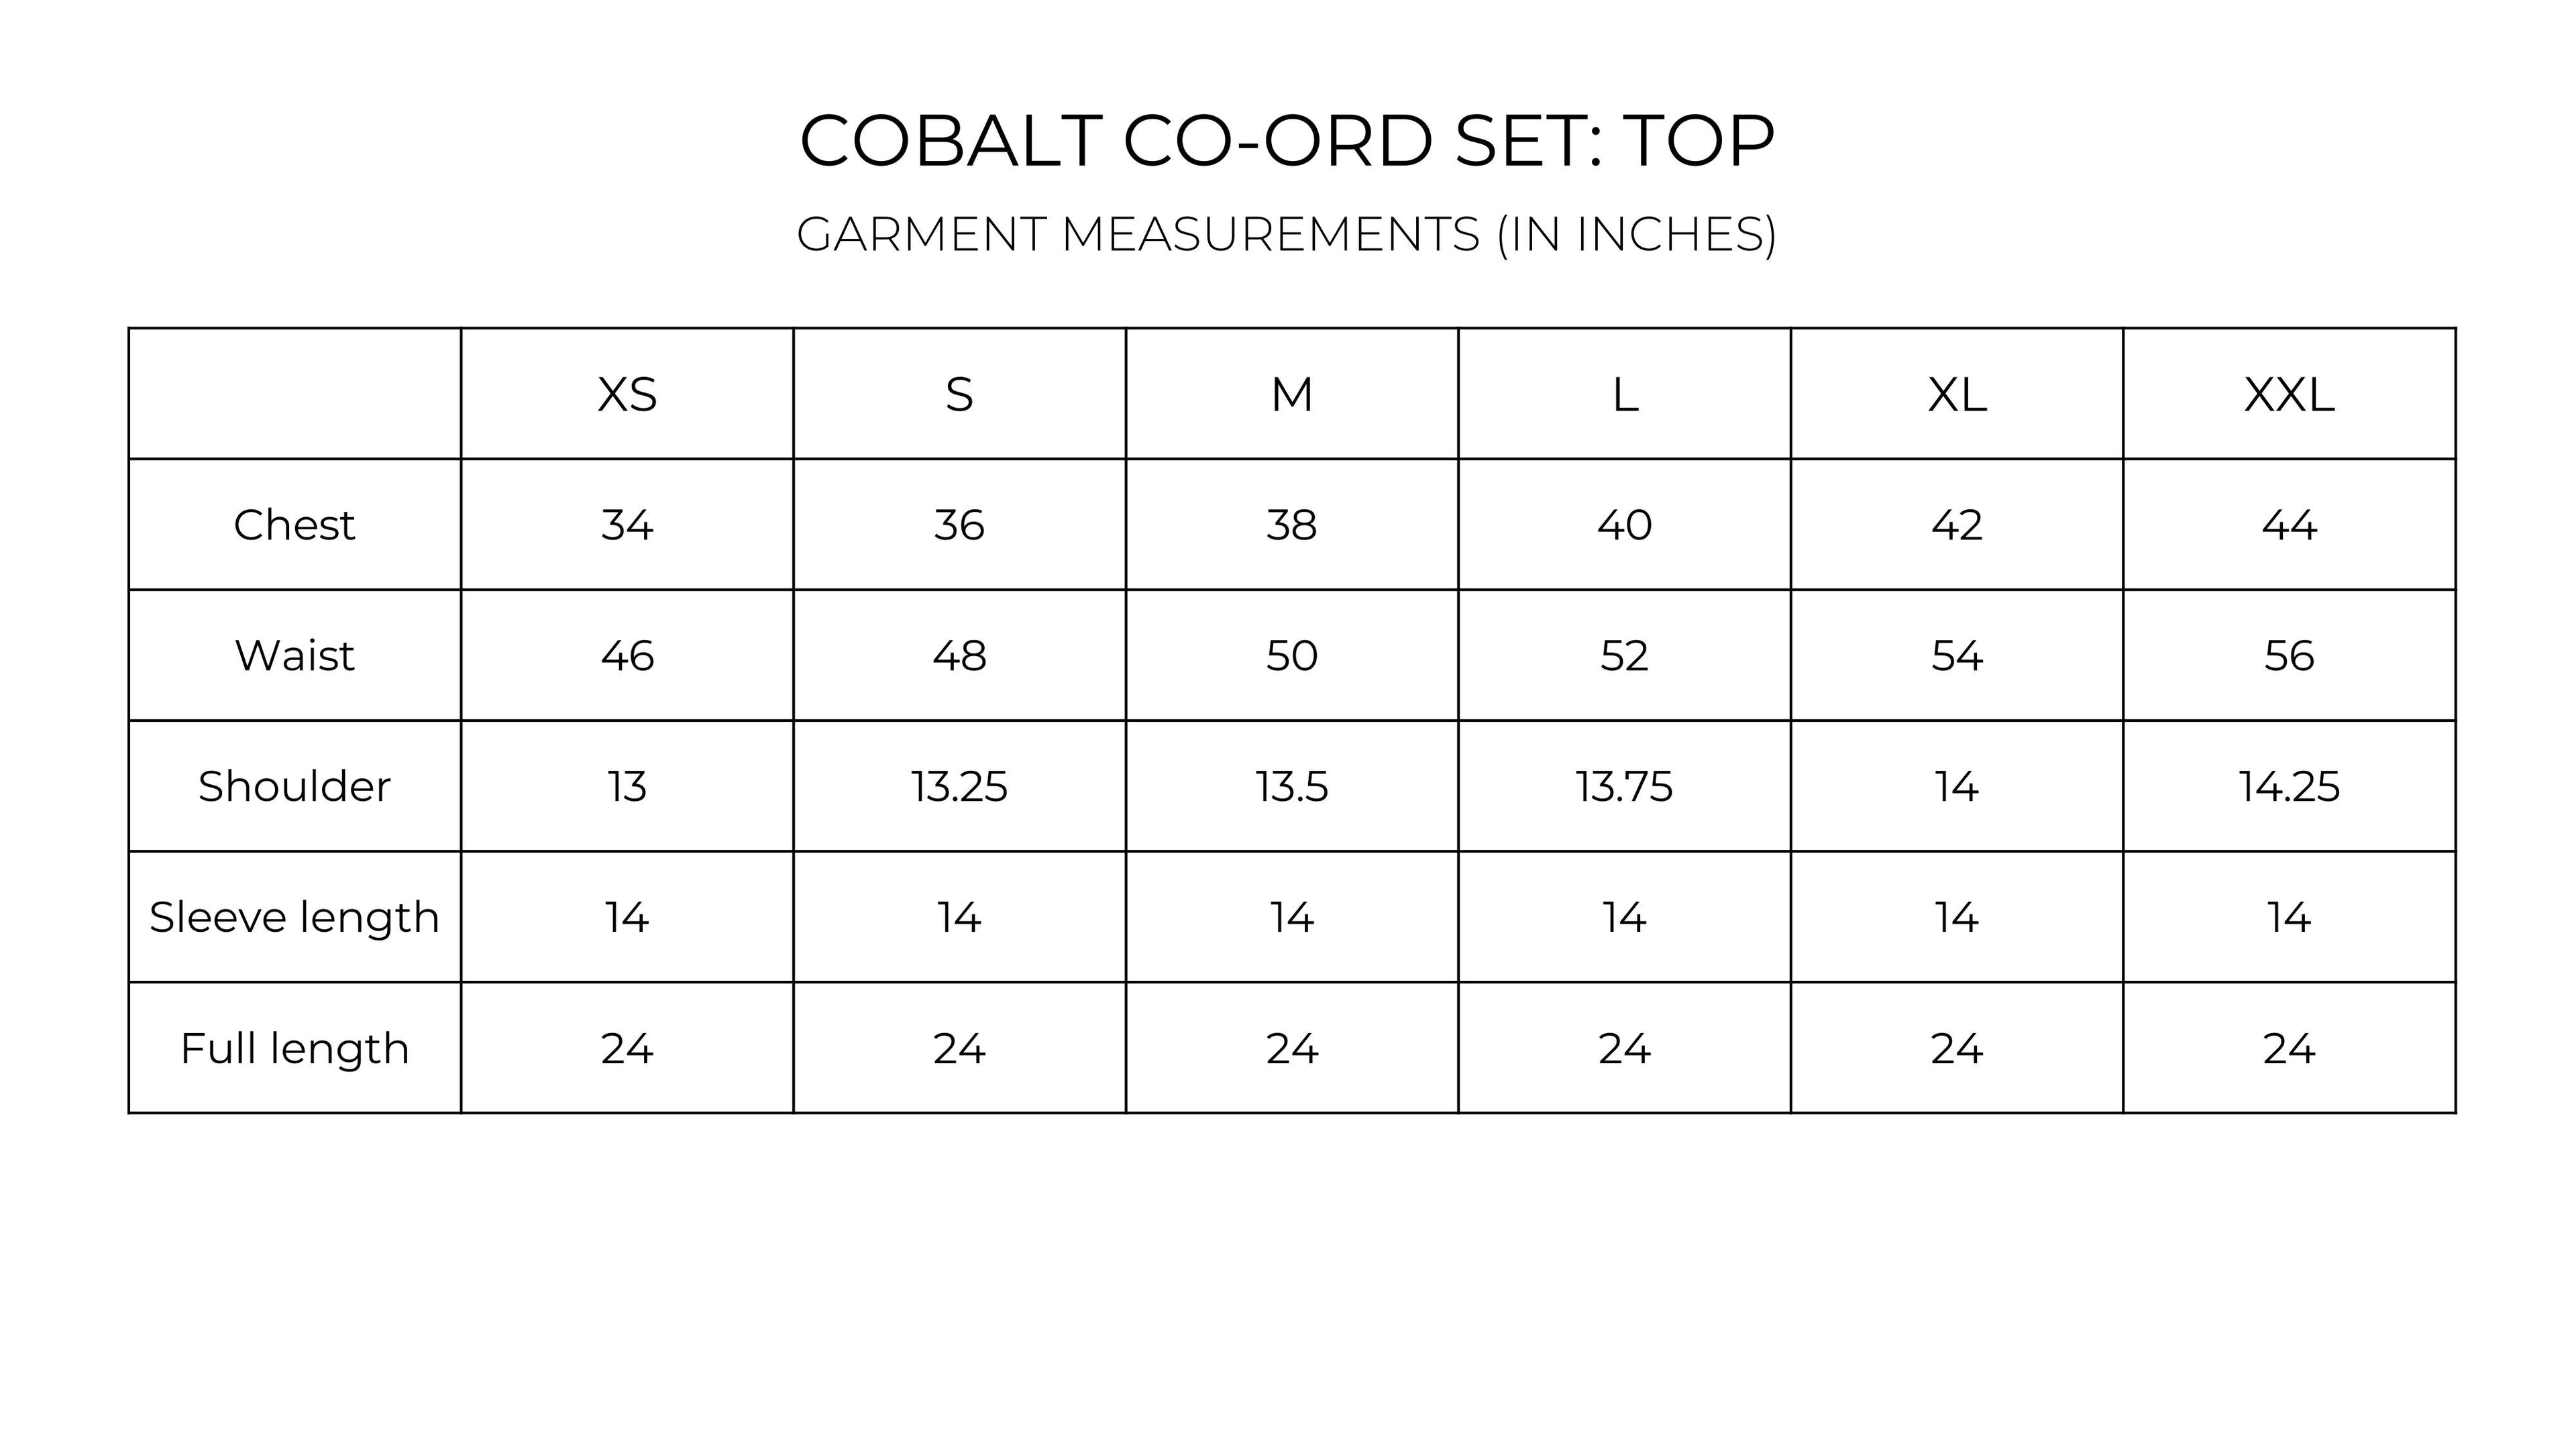 Cobalt Co-ord set